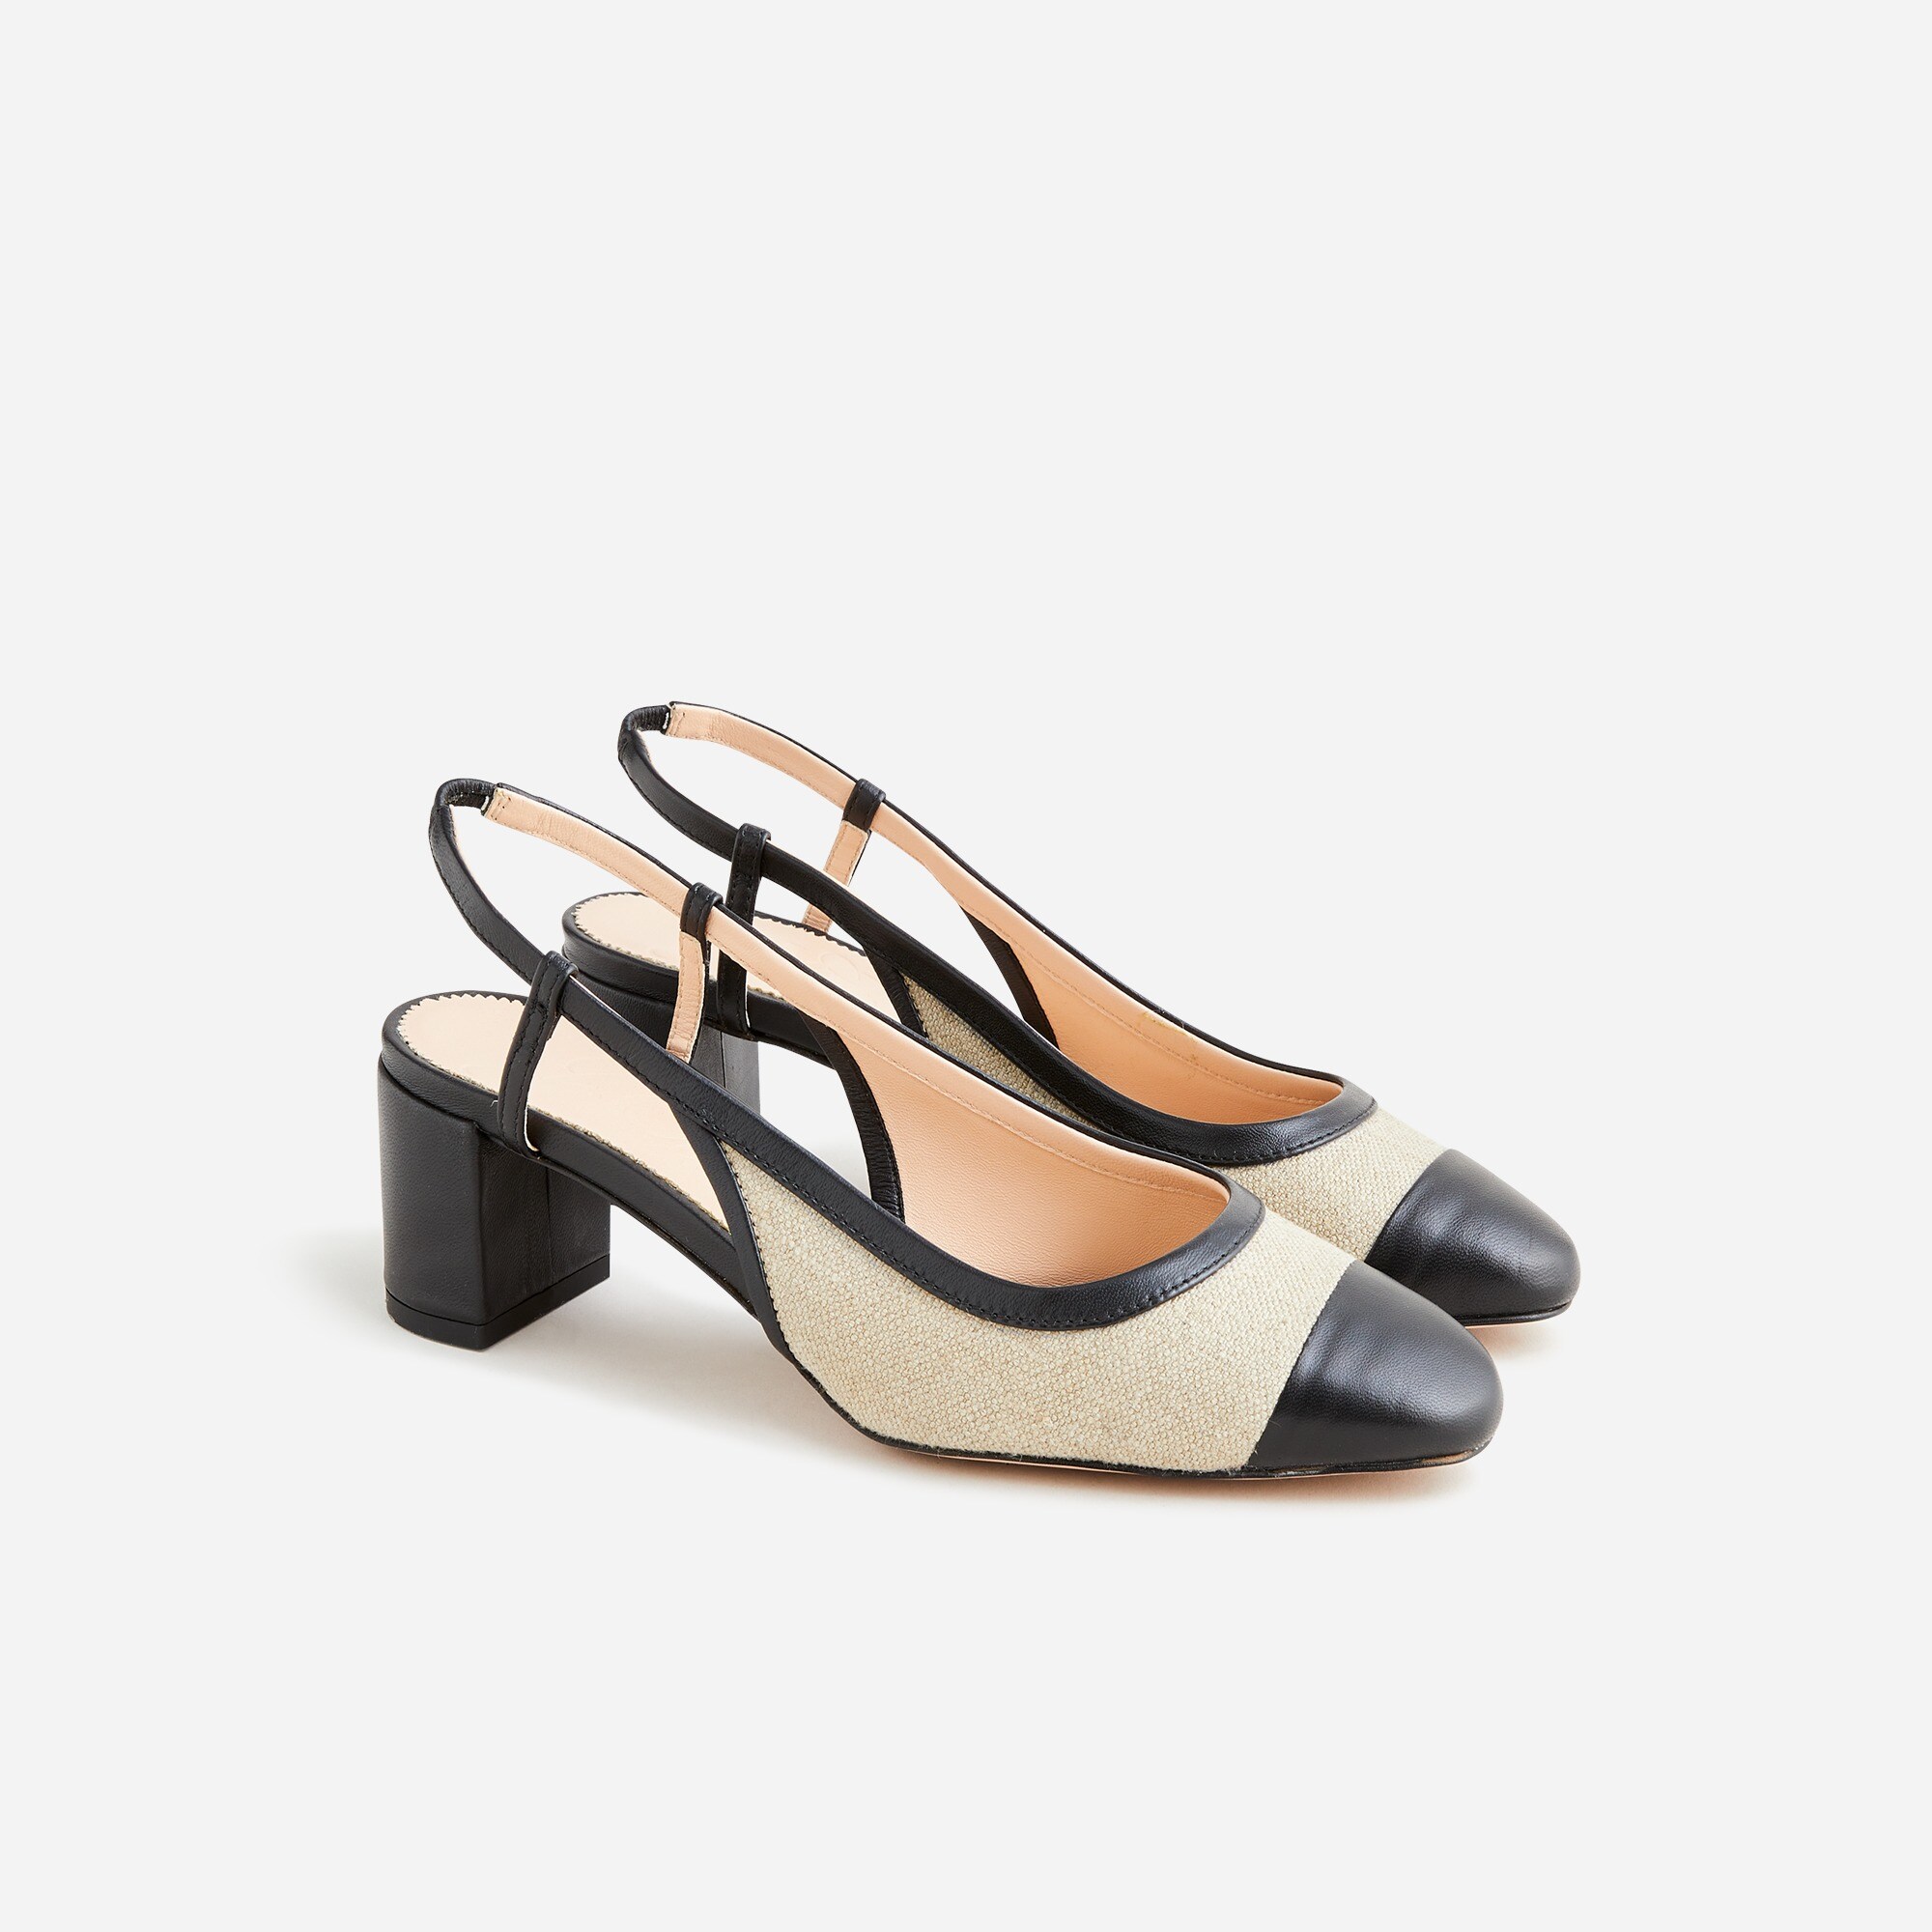  Millie slingback heels in Italian linen